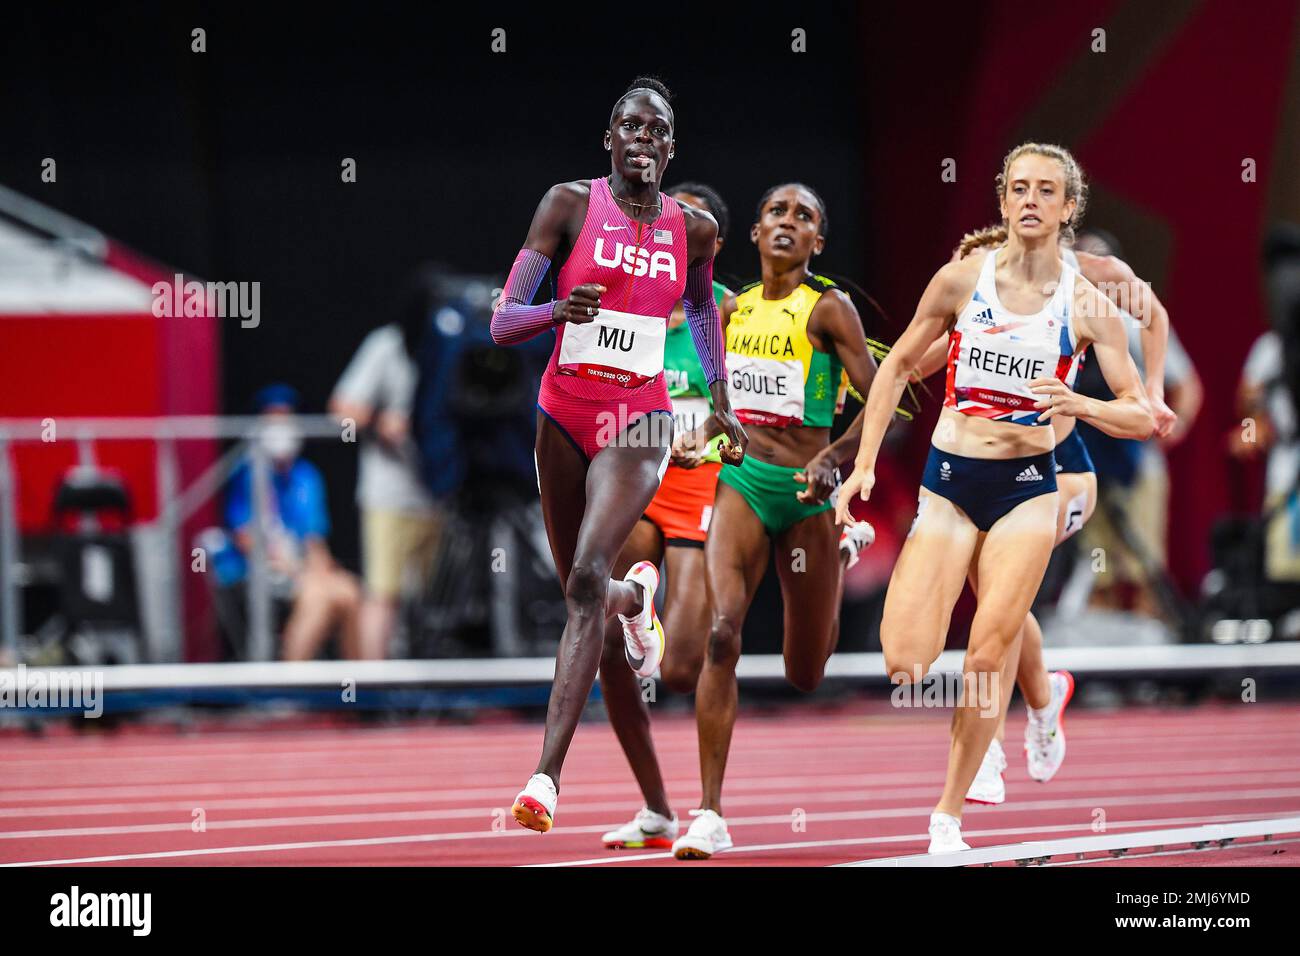 Athing Mu (USA) Champion olympique des 800 mètres féminins aux Jeux Olympiques d'été de 2020 (2021), Tokyo, Japon Banque D'Images